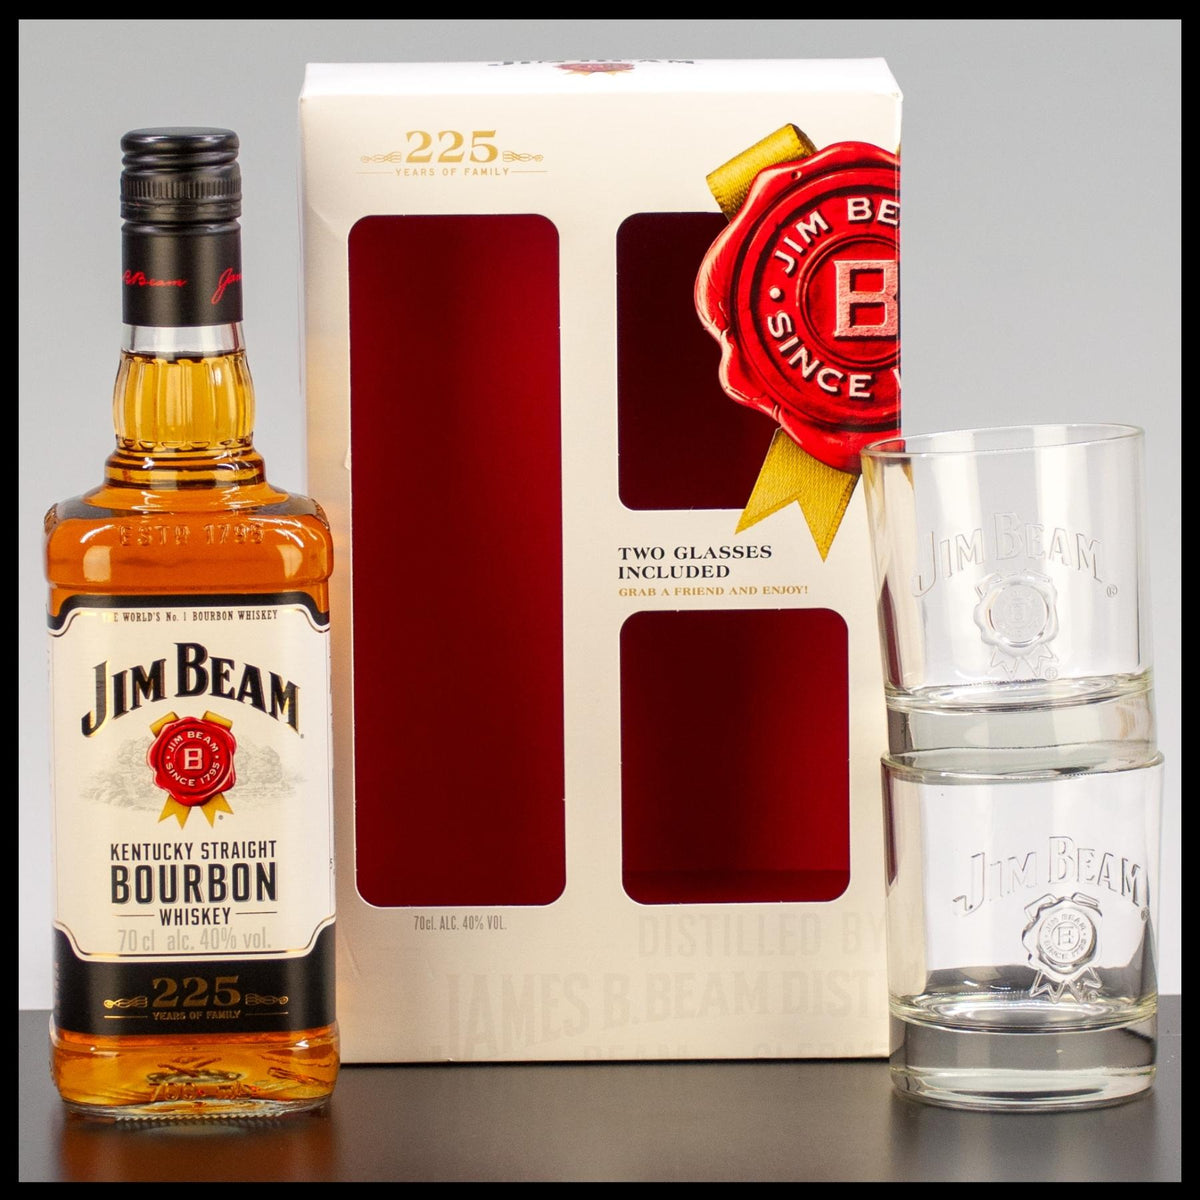 Jim Beam Kentucky Straight Bourbon Whiskey Geschenkbox mit 2 Gläsern 0,7L - 40% Vol. - Trinklusiv